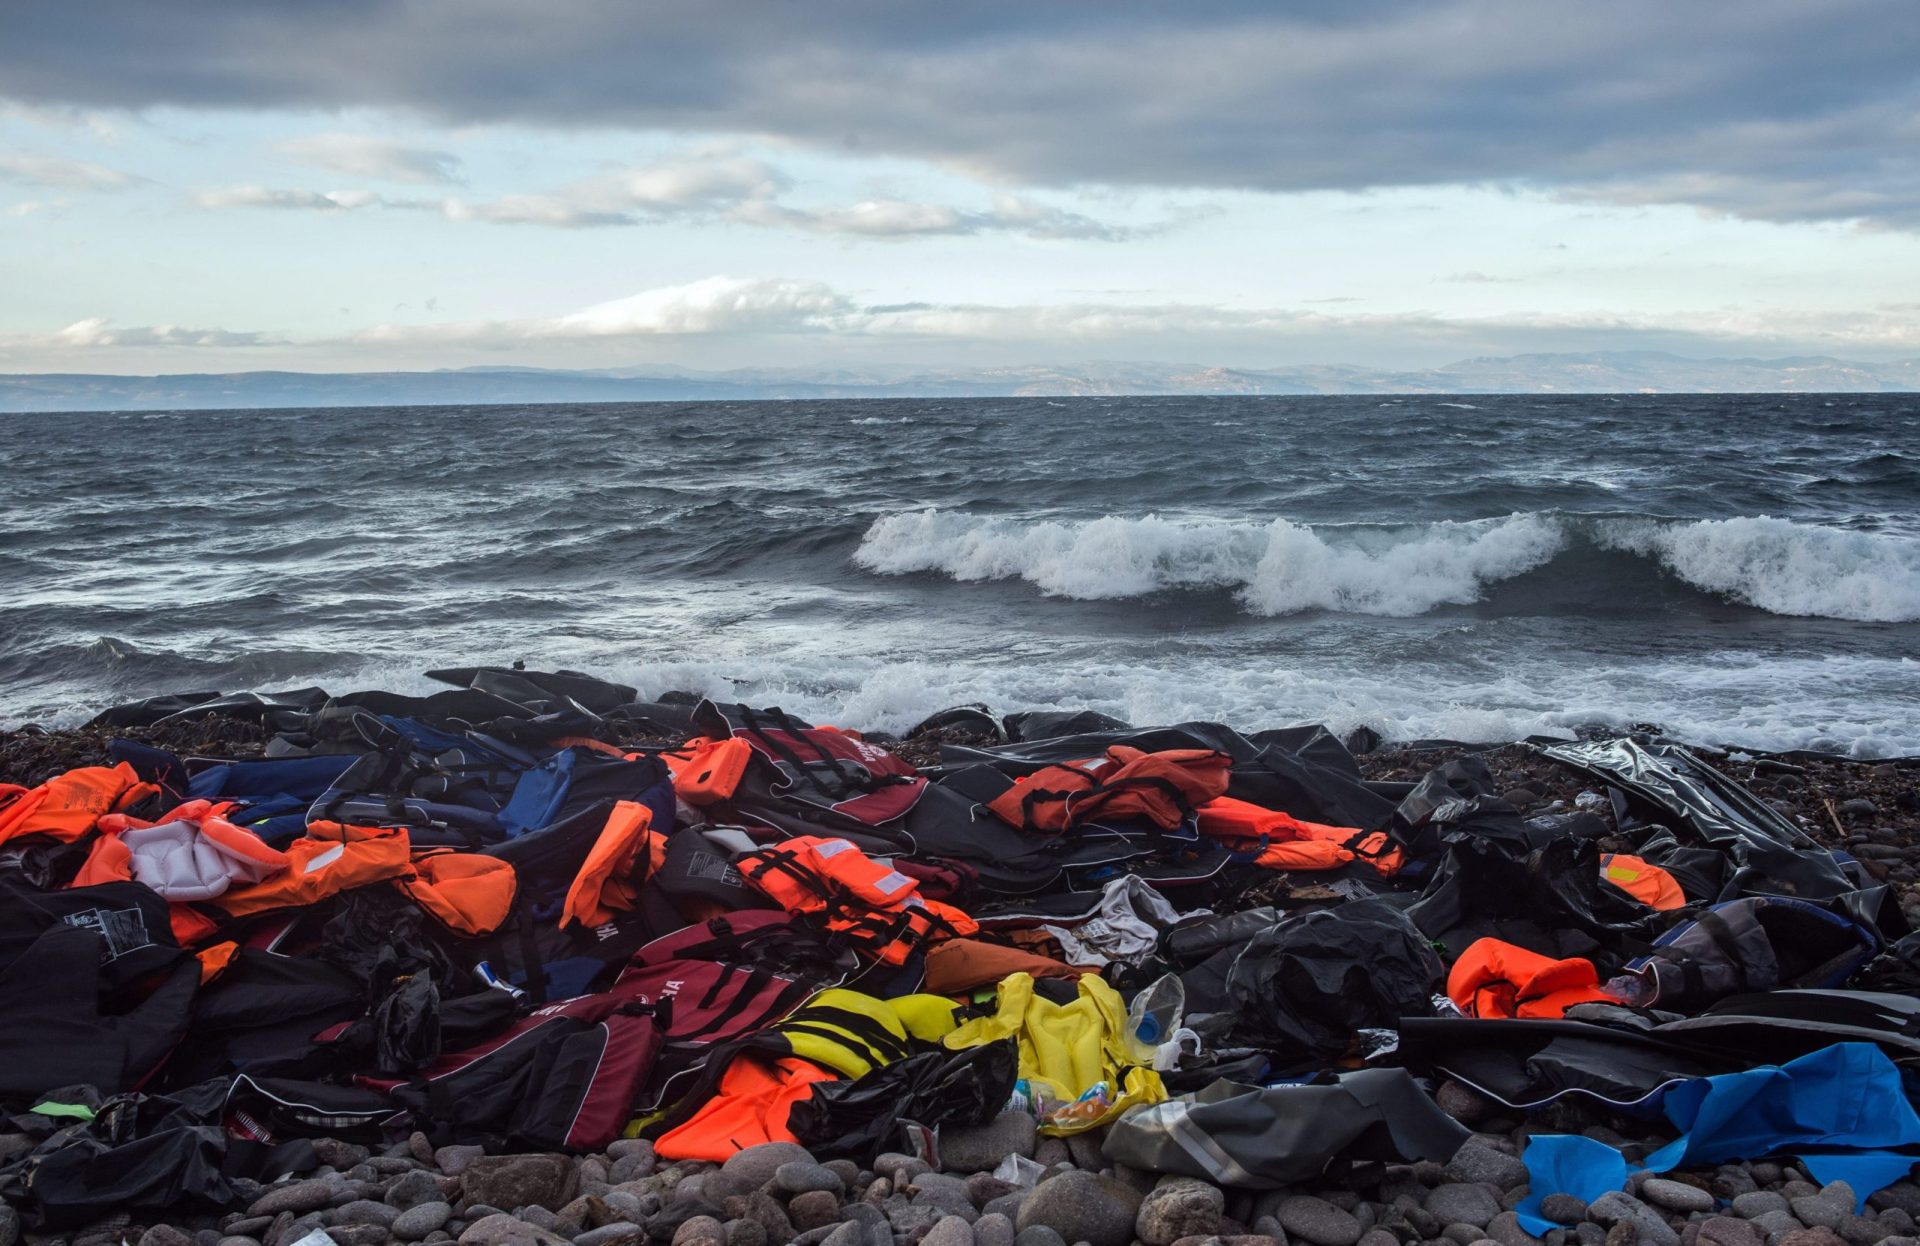 Pelo menos 21 mortos em dois naufrágios ao largo de ilhas gregas